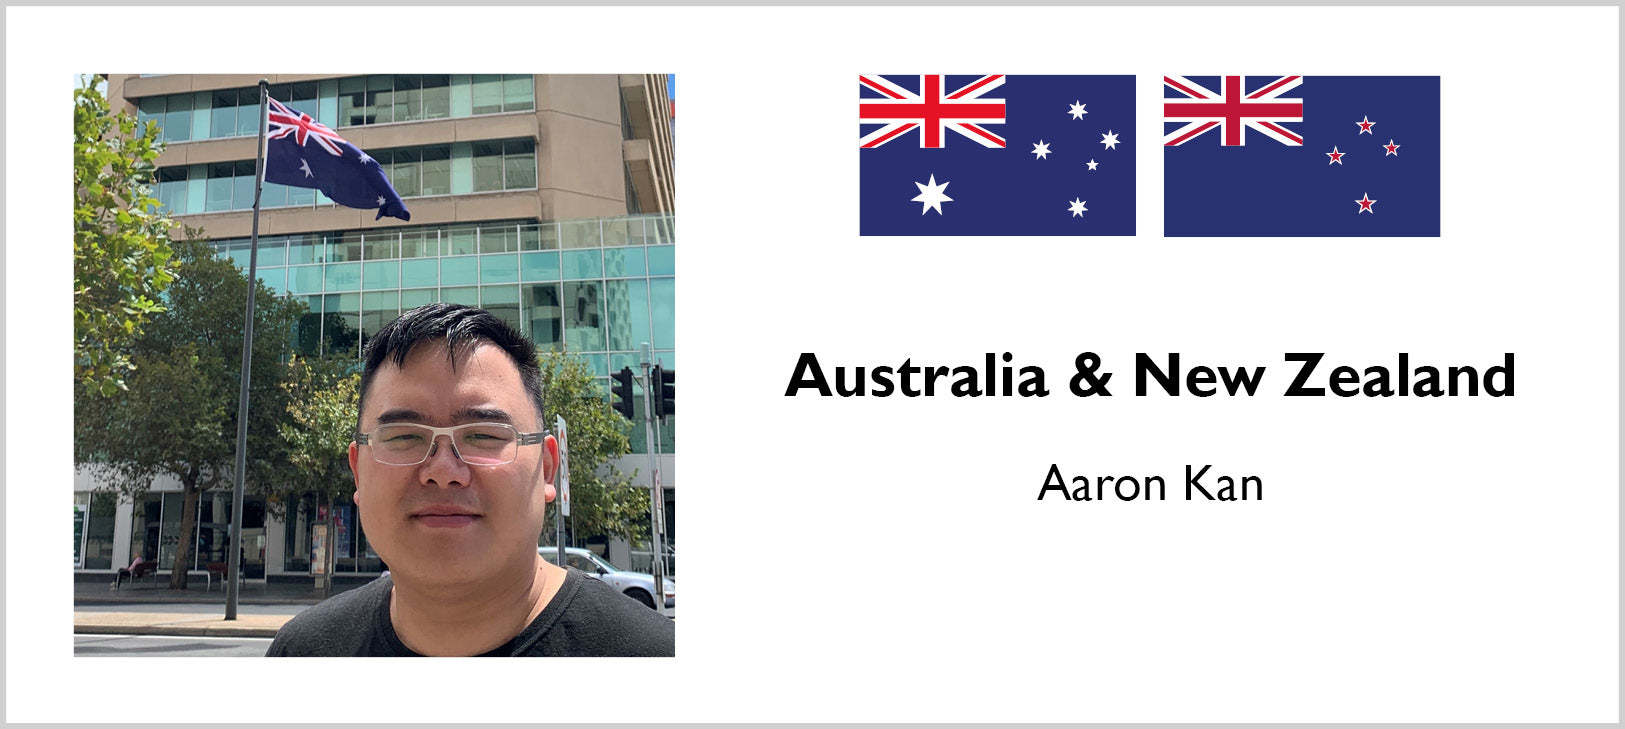 Aaron Kan - Australia & New Zealand